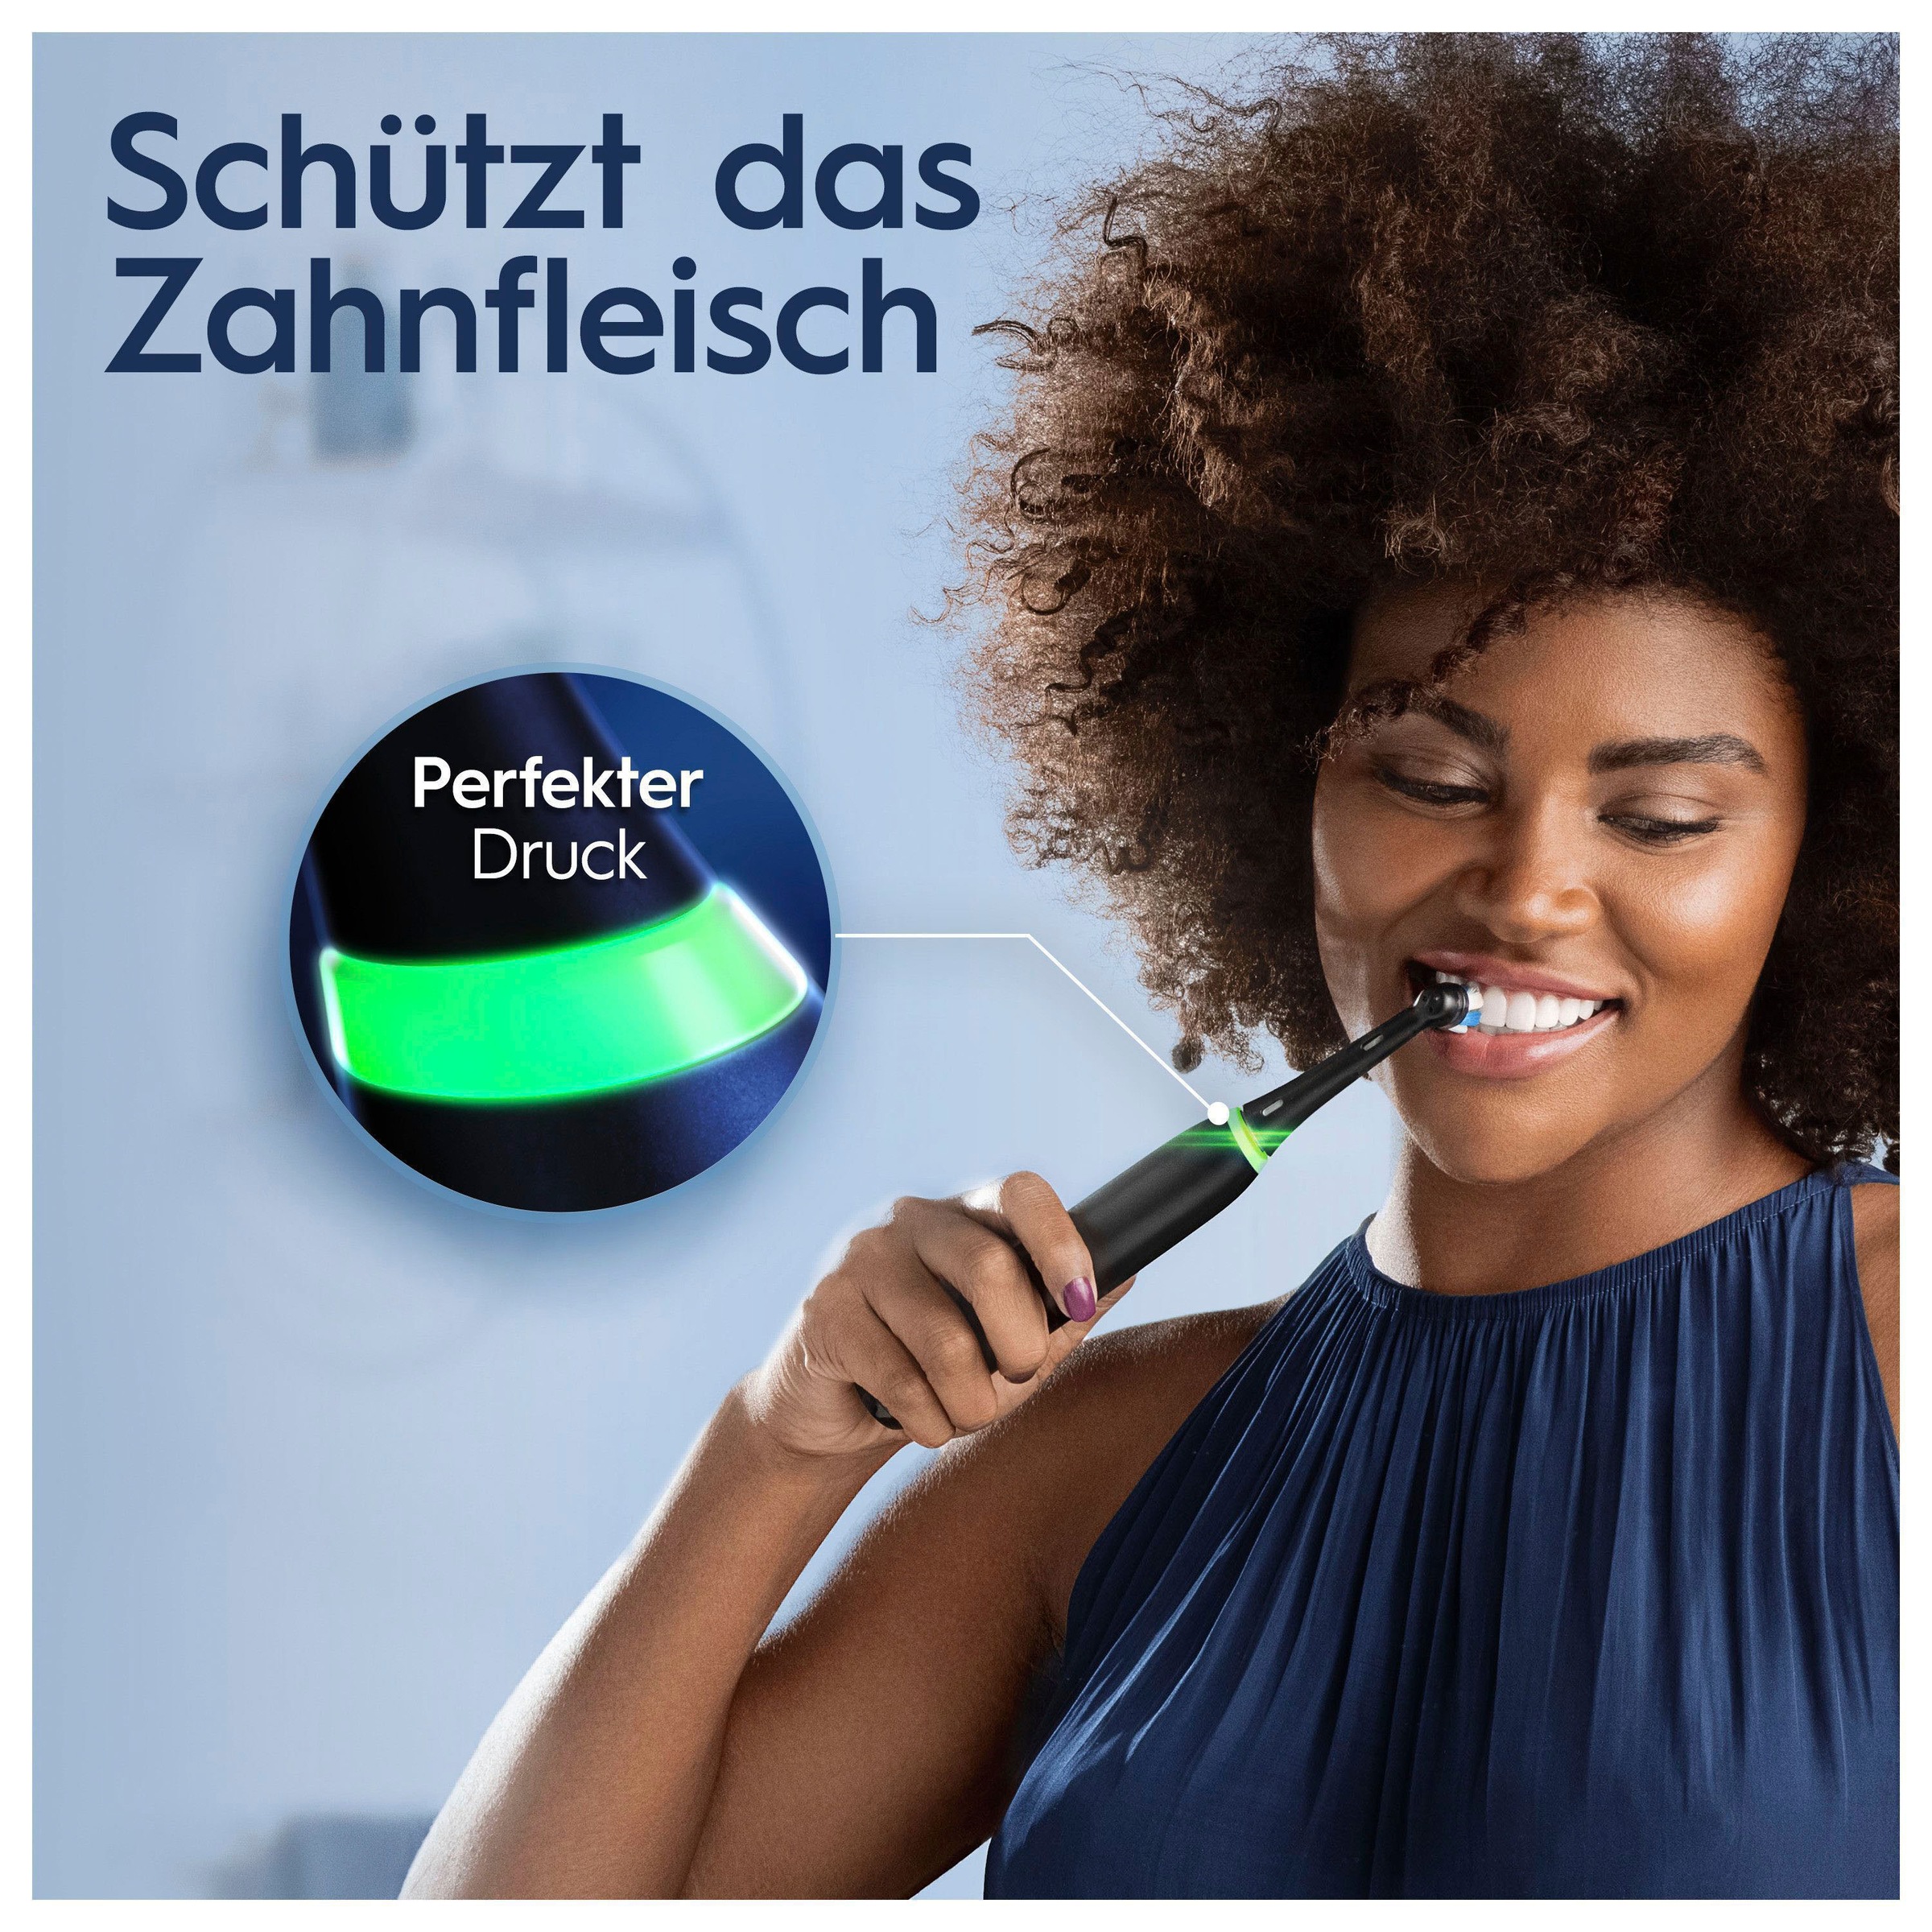 Oral-B Elektrische Zahnbürste »iO 5 Duopack«, 2 St. Aufsteckbürsten, mit  Magnet-Technologie, LED-Anzeige, 5 Putzmodi, Reiseetui kaufen